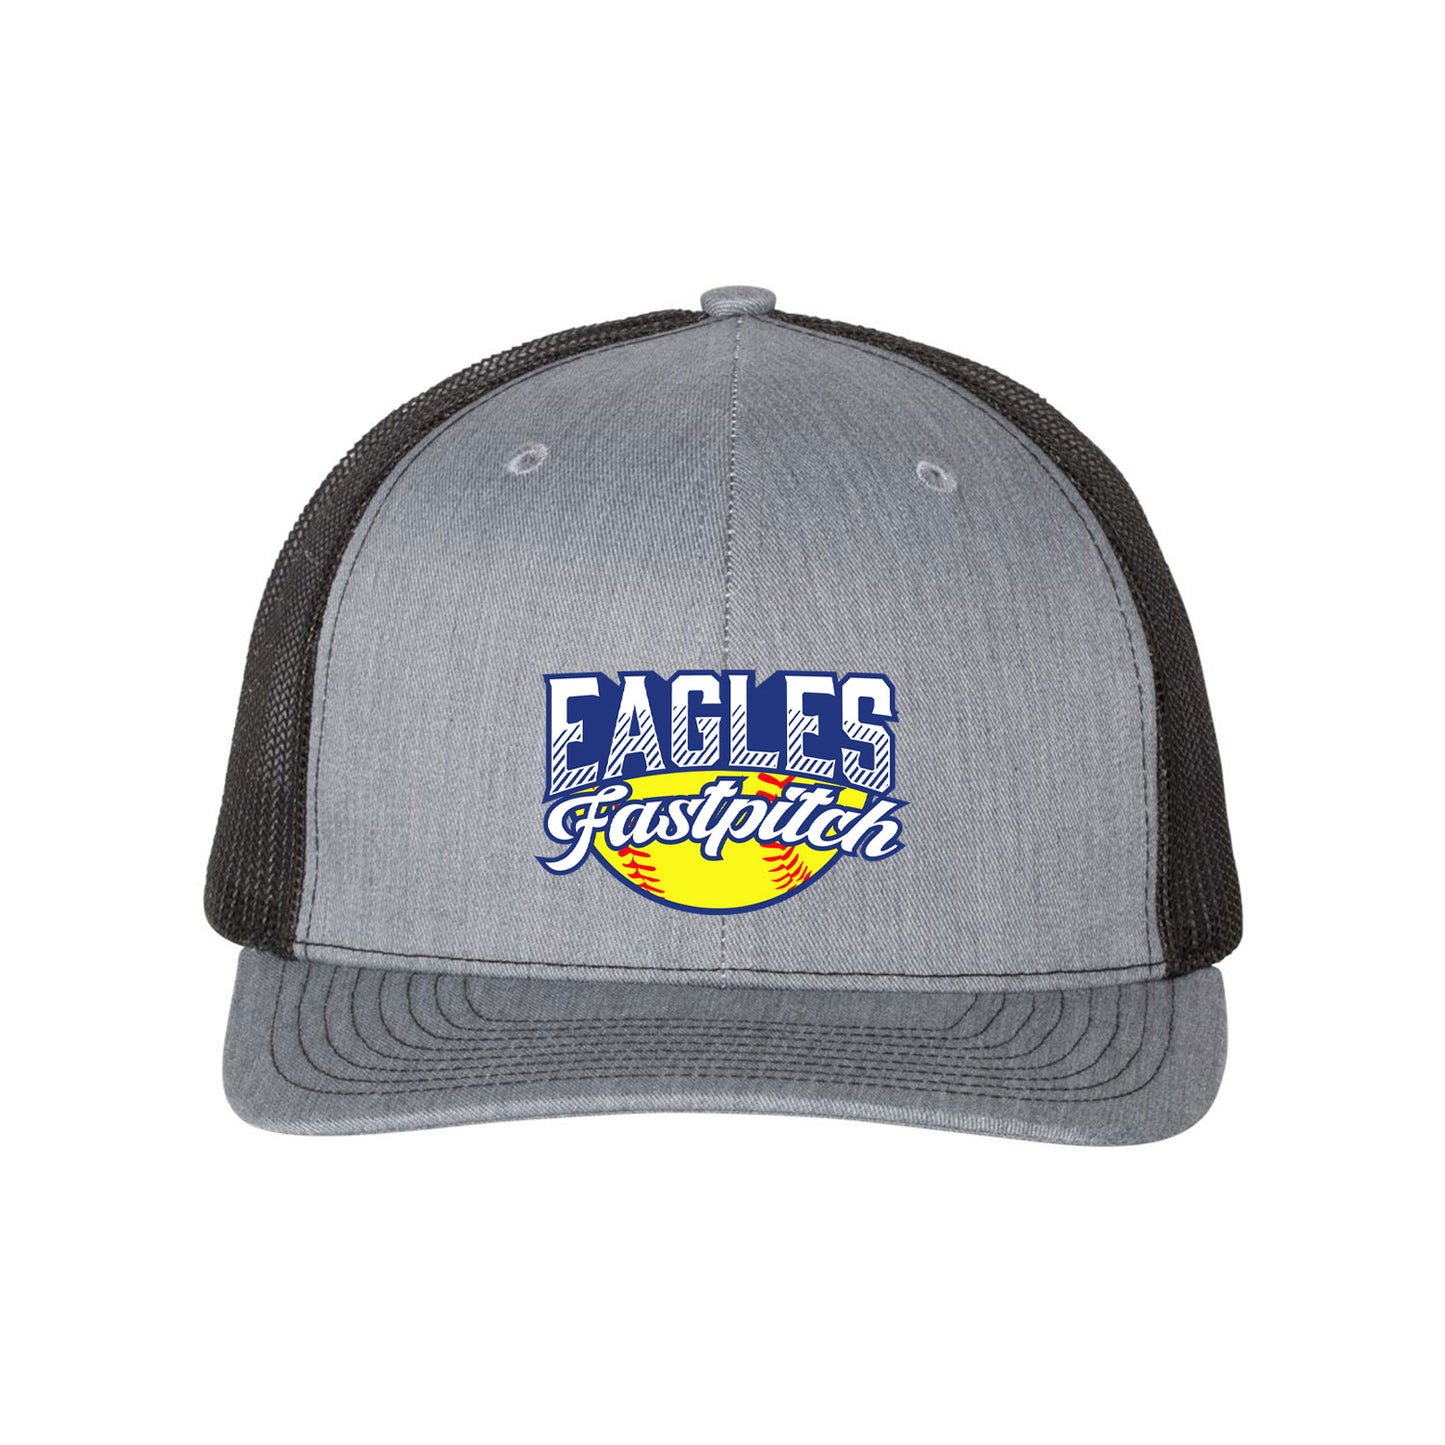 Richardson 112 Snapback Hat (Eagles Fastpitch)